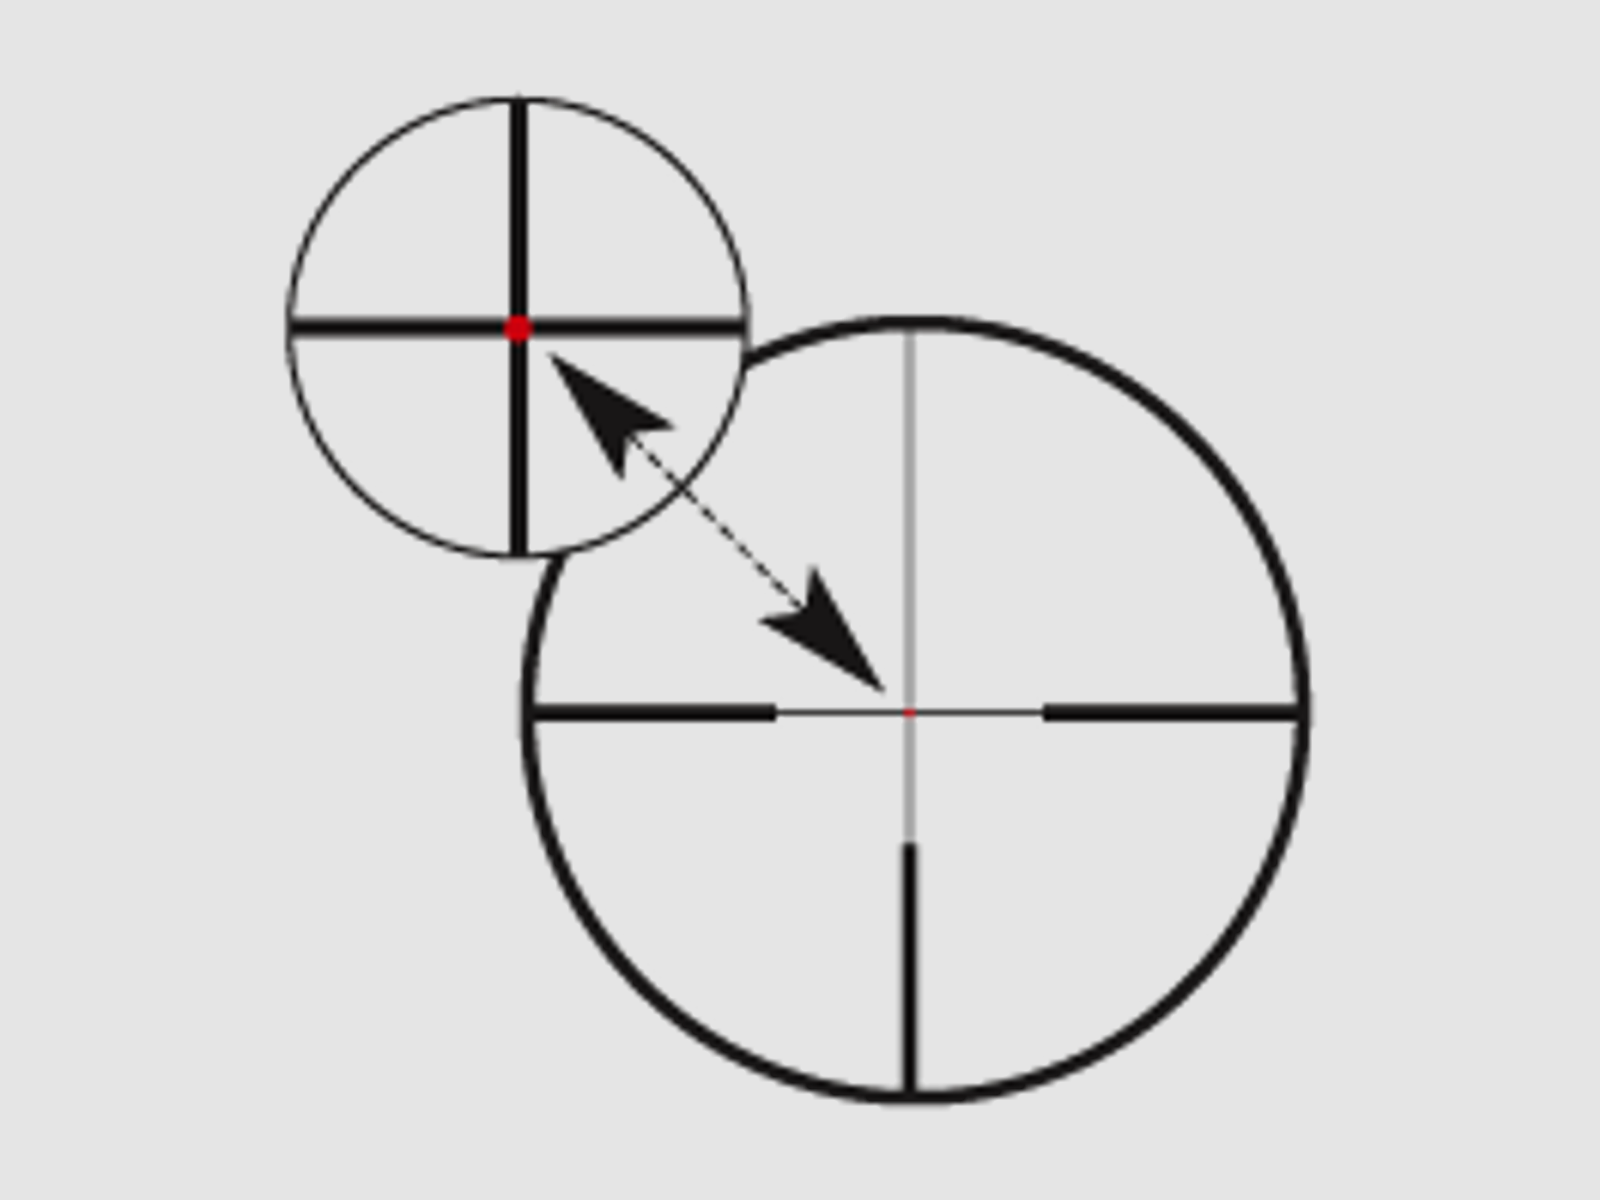 ZEISS Zielfernrohr mit Leuchtabsehen 2,5-10x50 Victory HT (30mm) Abs. 60